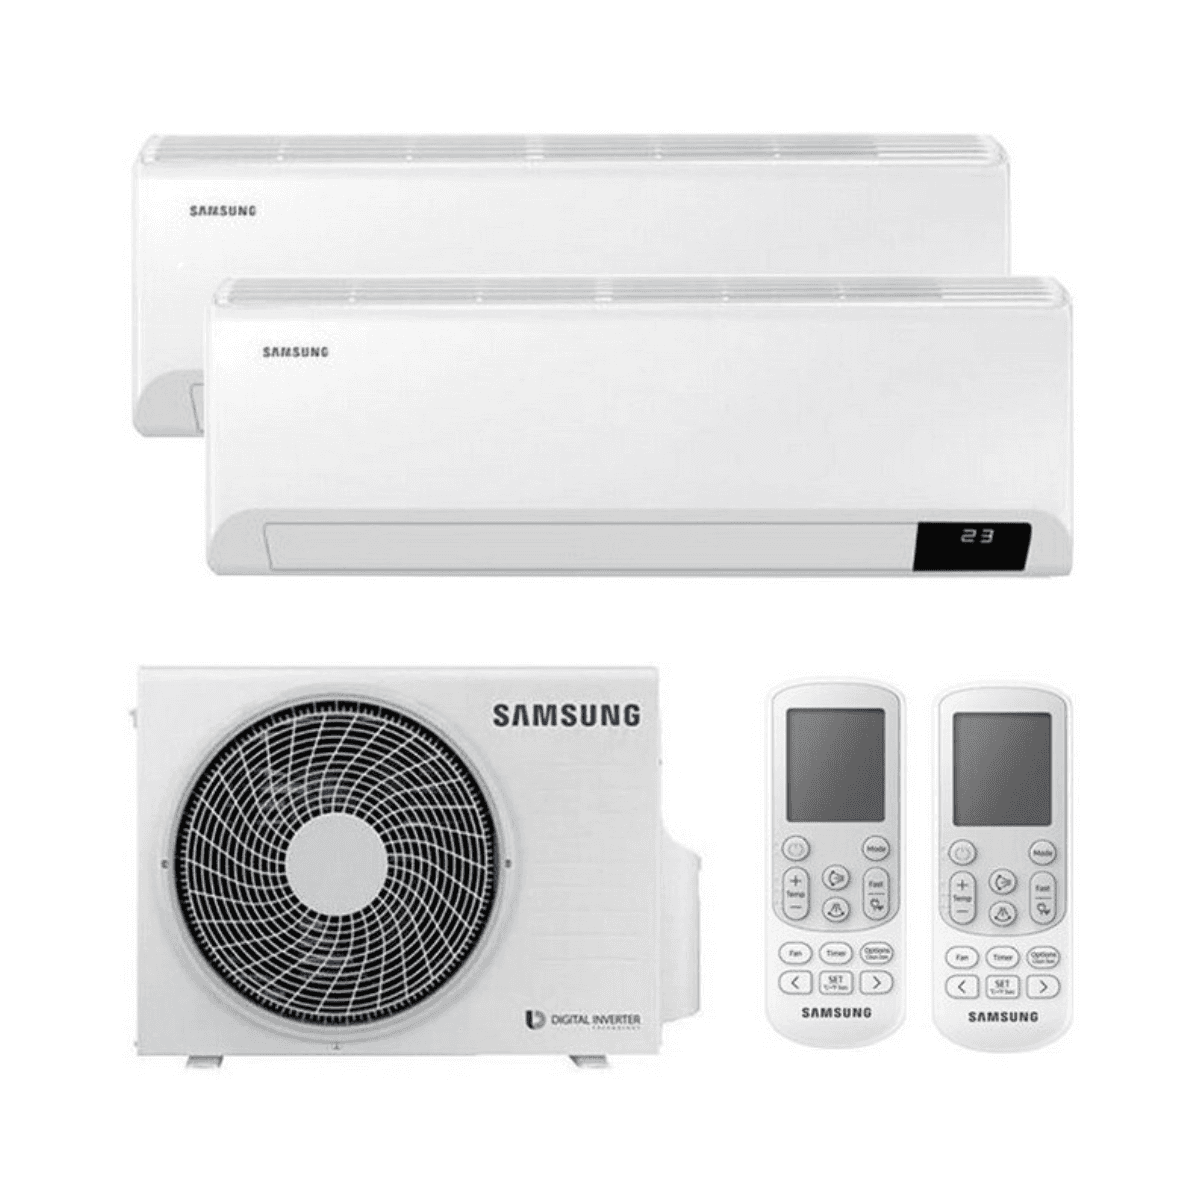 Climatiseur réversible dual split Samsung Wind Free Comfort AR09 + AR12 9000 BTU + 12000 BTU avec la référence KITSAMWINDFREE09+18 de la marque SAMSUNG